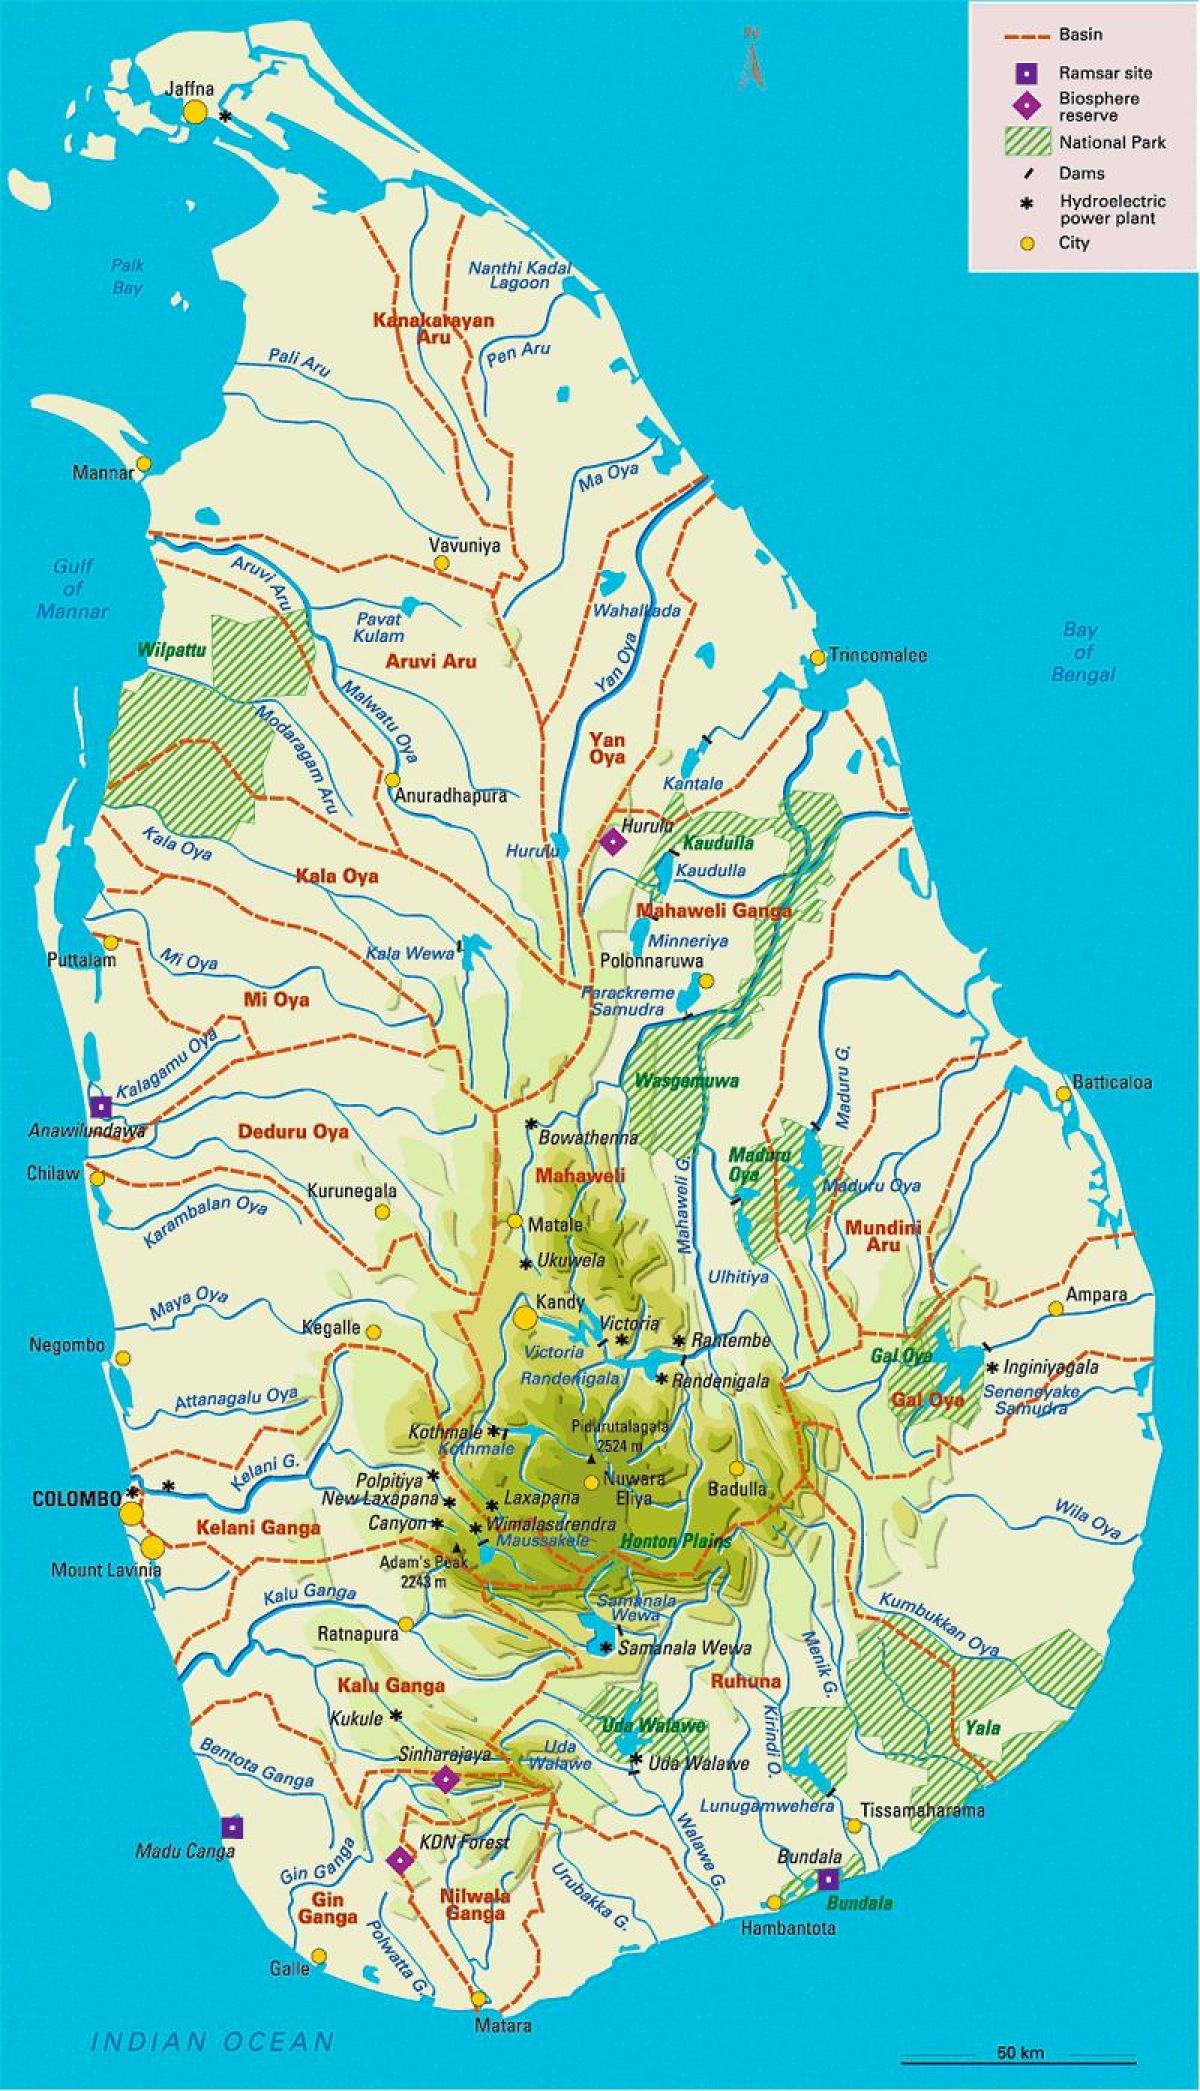 श्रीलंका की नदियों में नक्शे तमिल